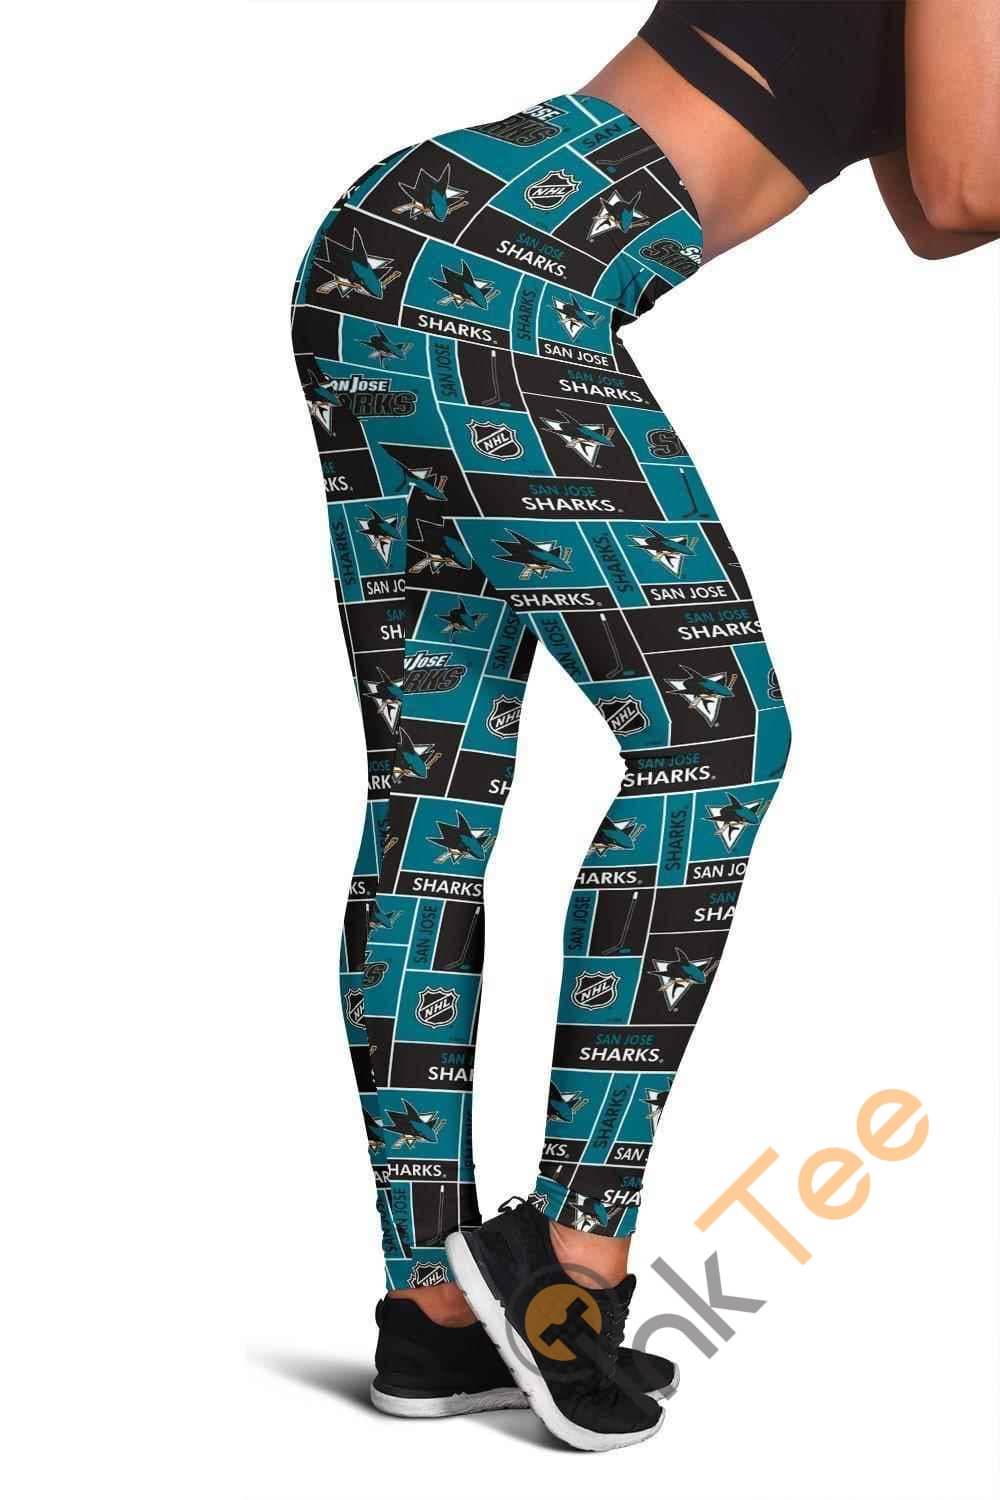 Inktee Store - San Jose Sharks 3D All Over Print For Yoga Fitness Women'S Leggings Image